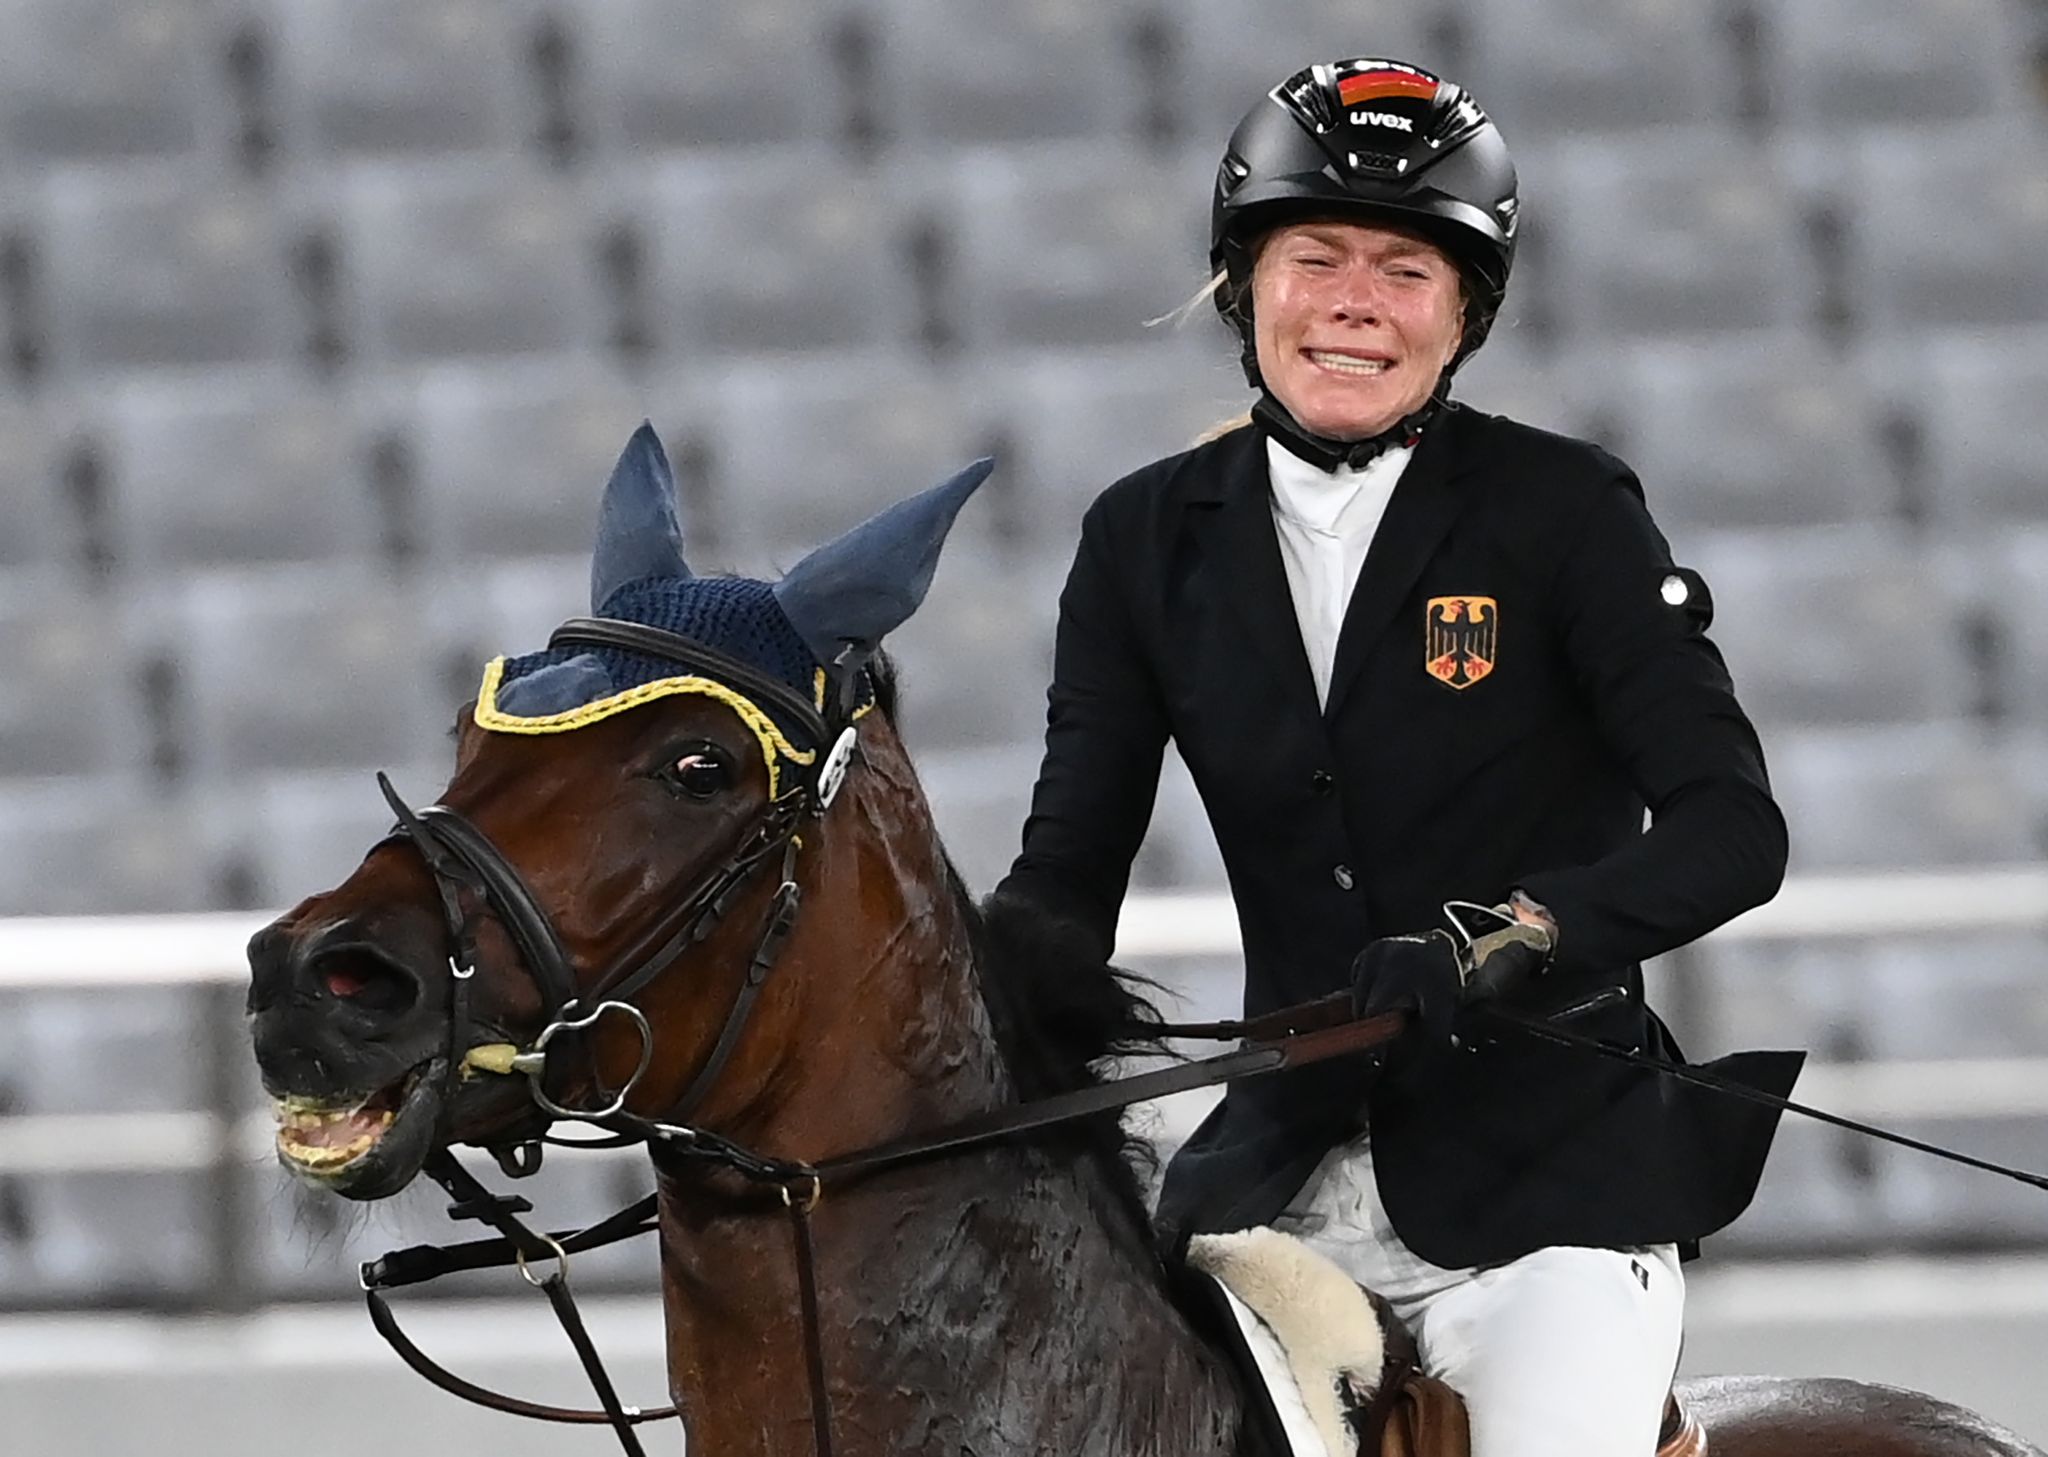 Die Fünfkämpferin Annika Schleu setzt ihre Karriere nach dem Olympia-Eklat fort.